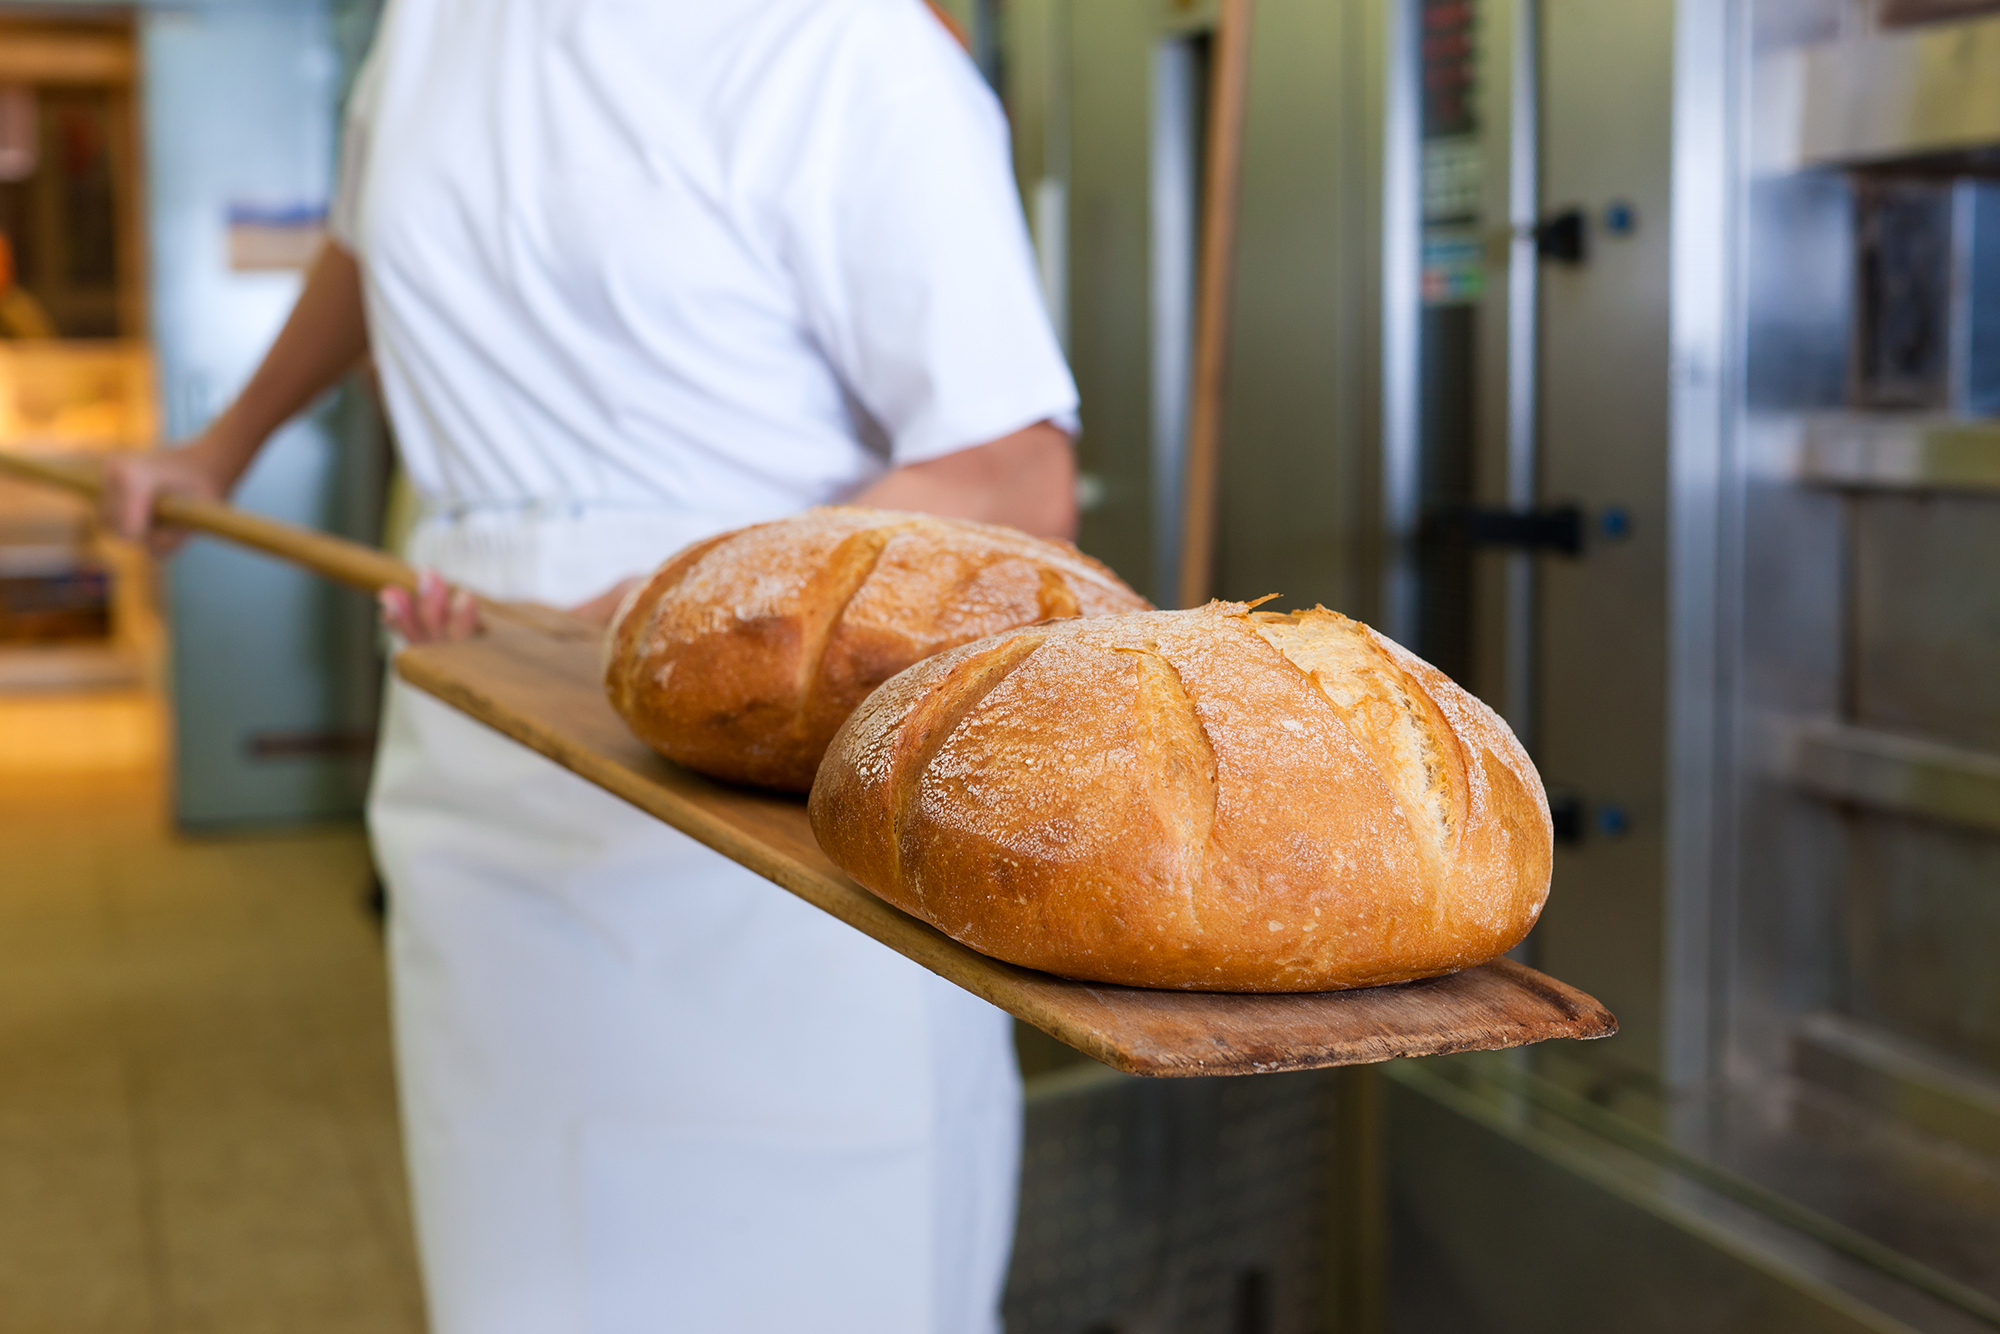 Bäcker beim Backen von Brot